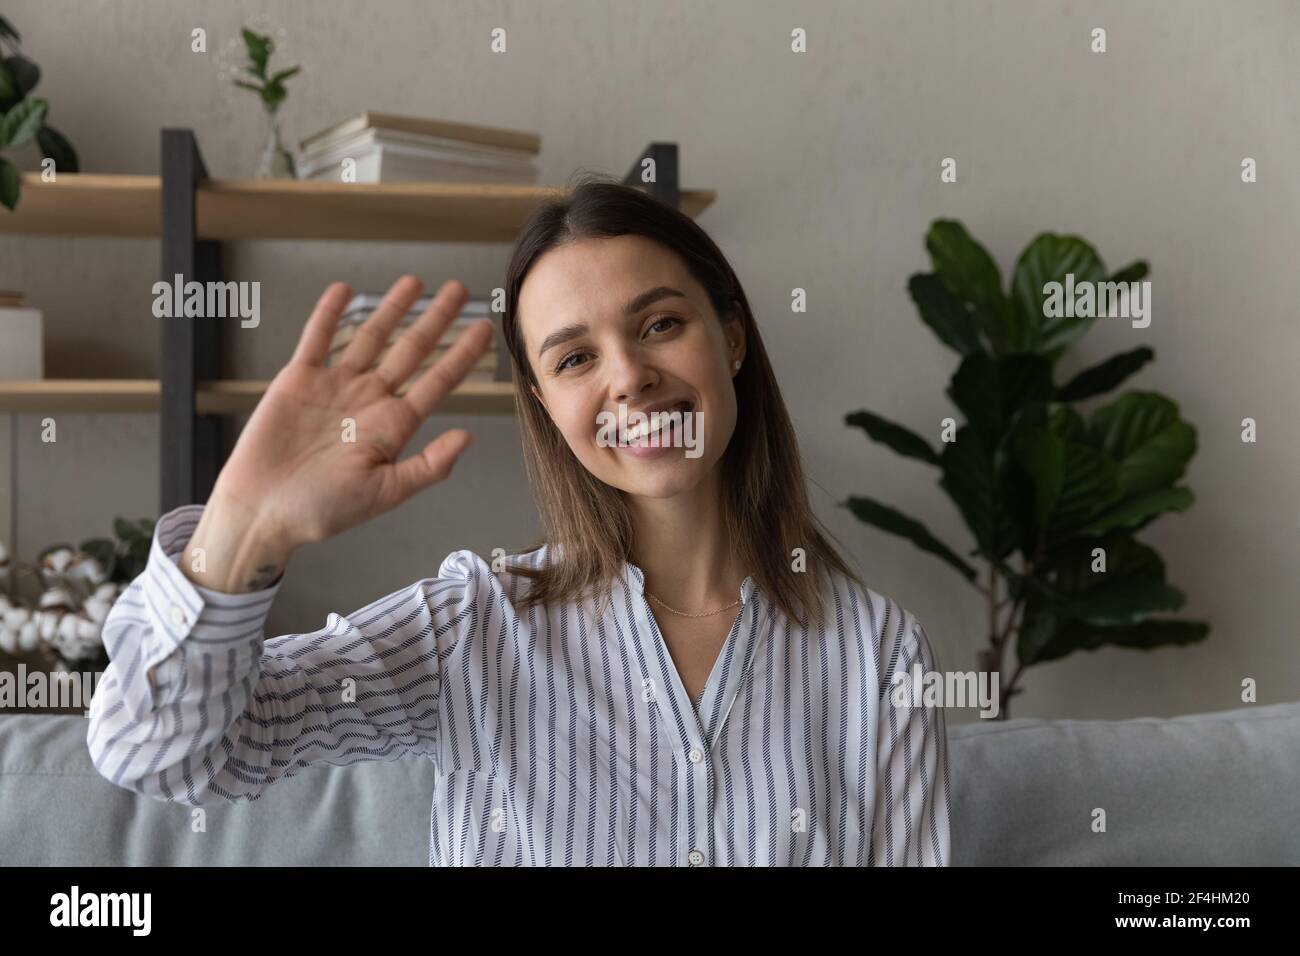 Kopfaufnahme Porträt lächelnde Frau winkende Hand an der Kamera Stockfoto